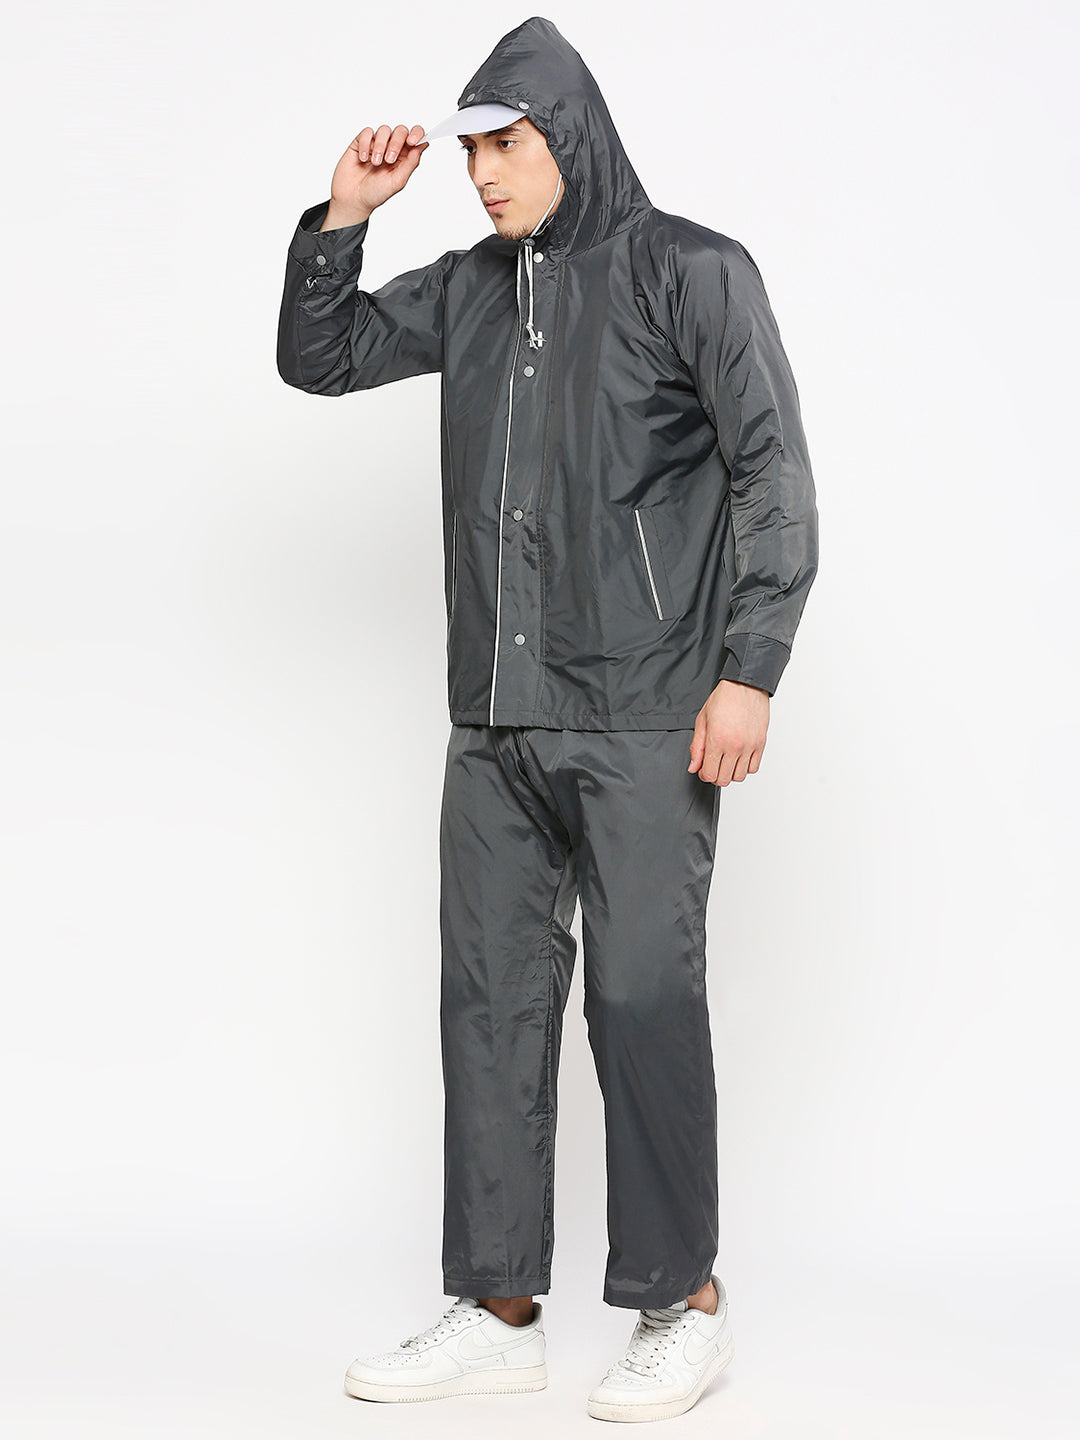 Highlands Colorado Reversible Rain Suit for Men